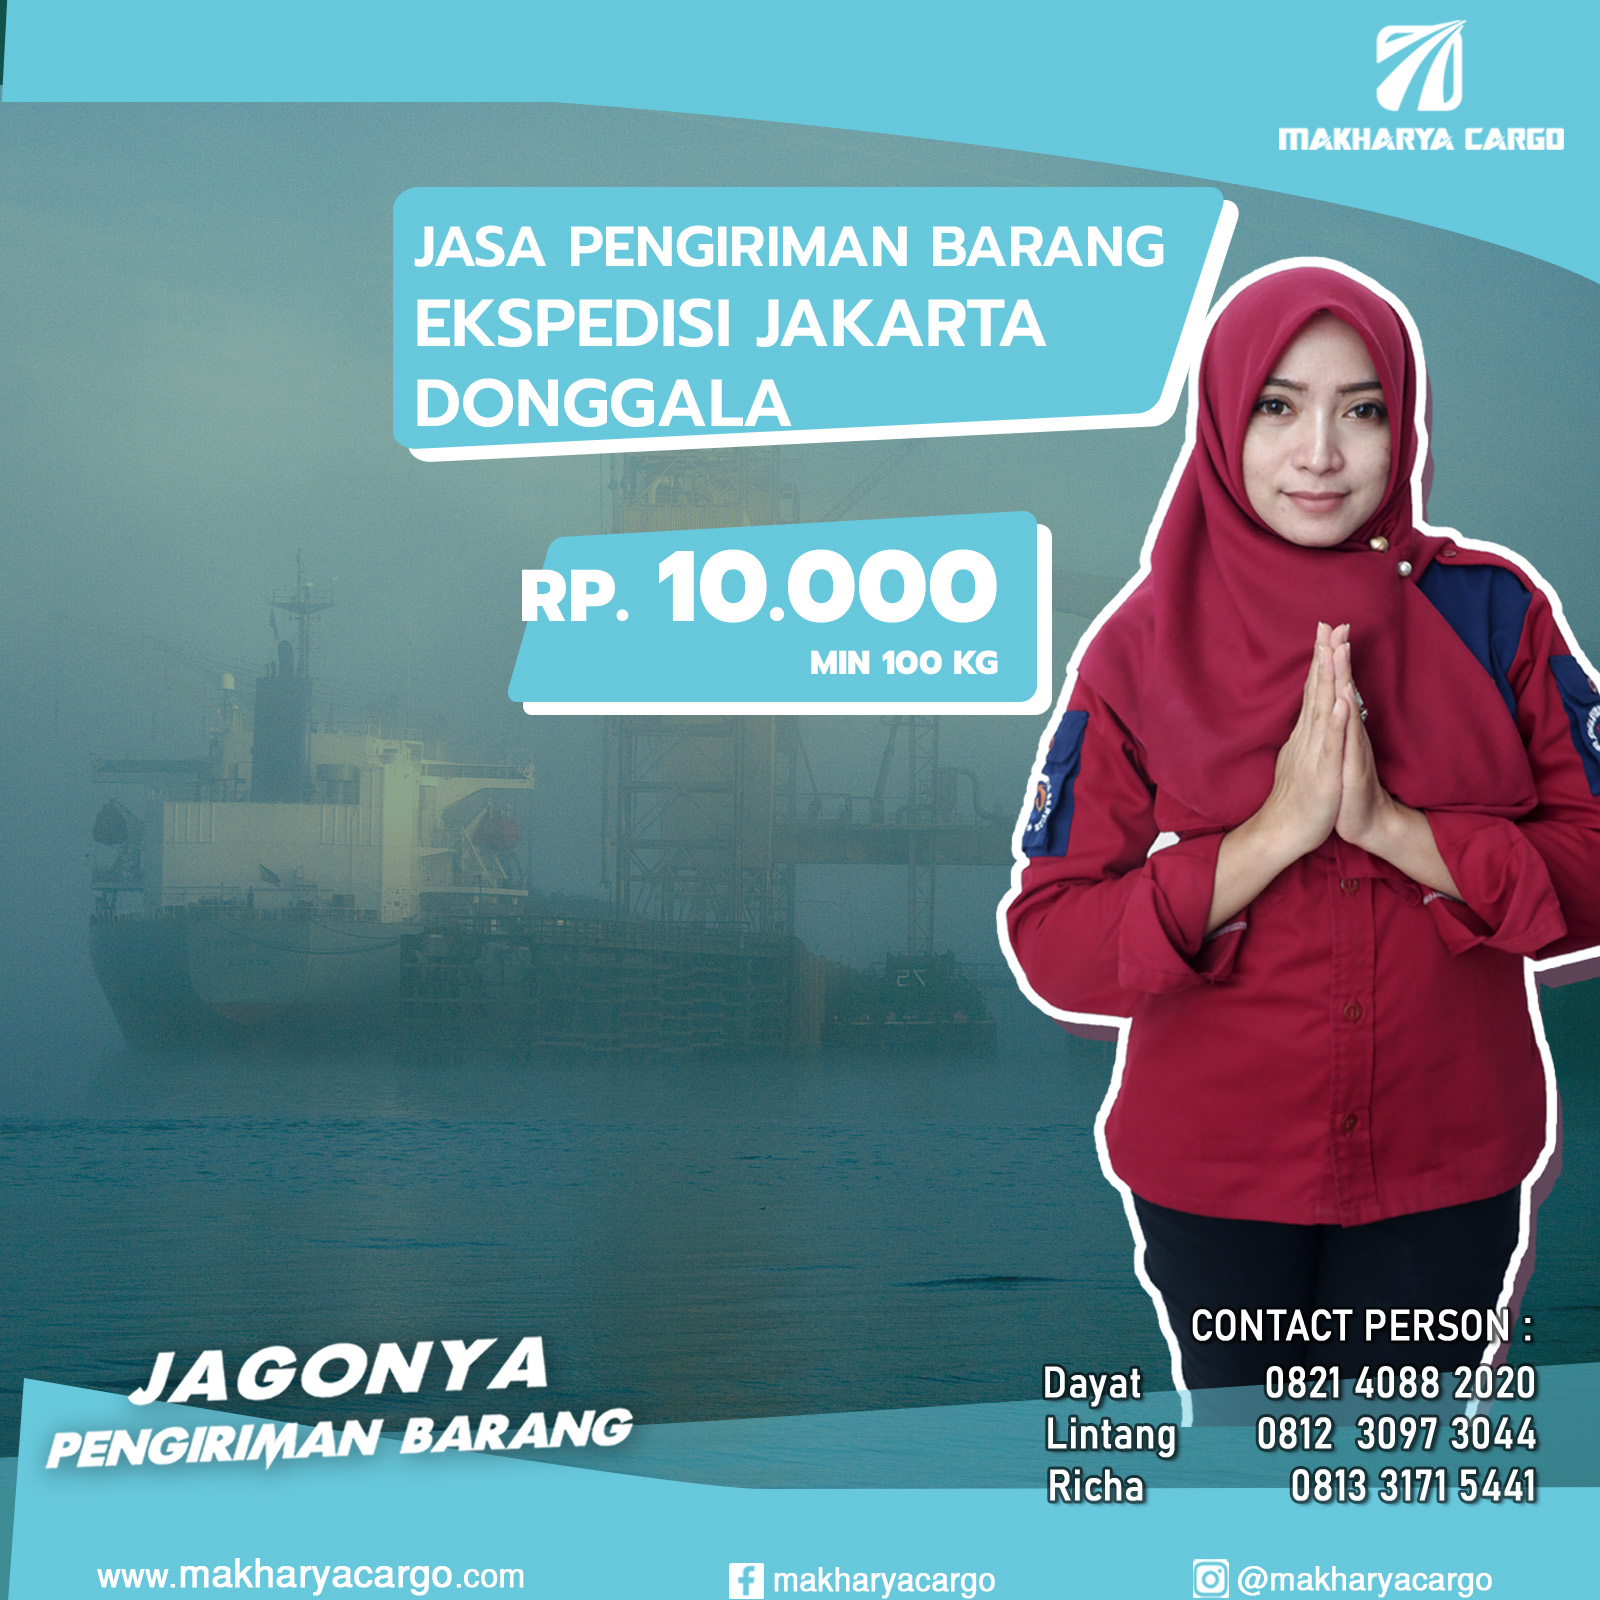 Ekspedisi Jakarta Donggala